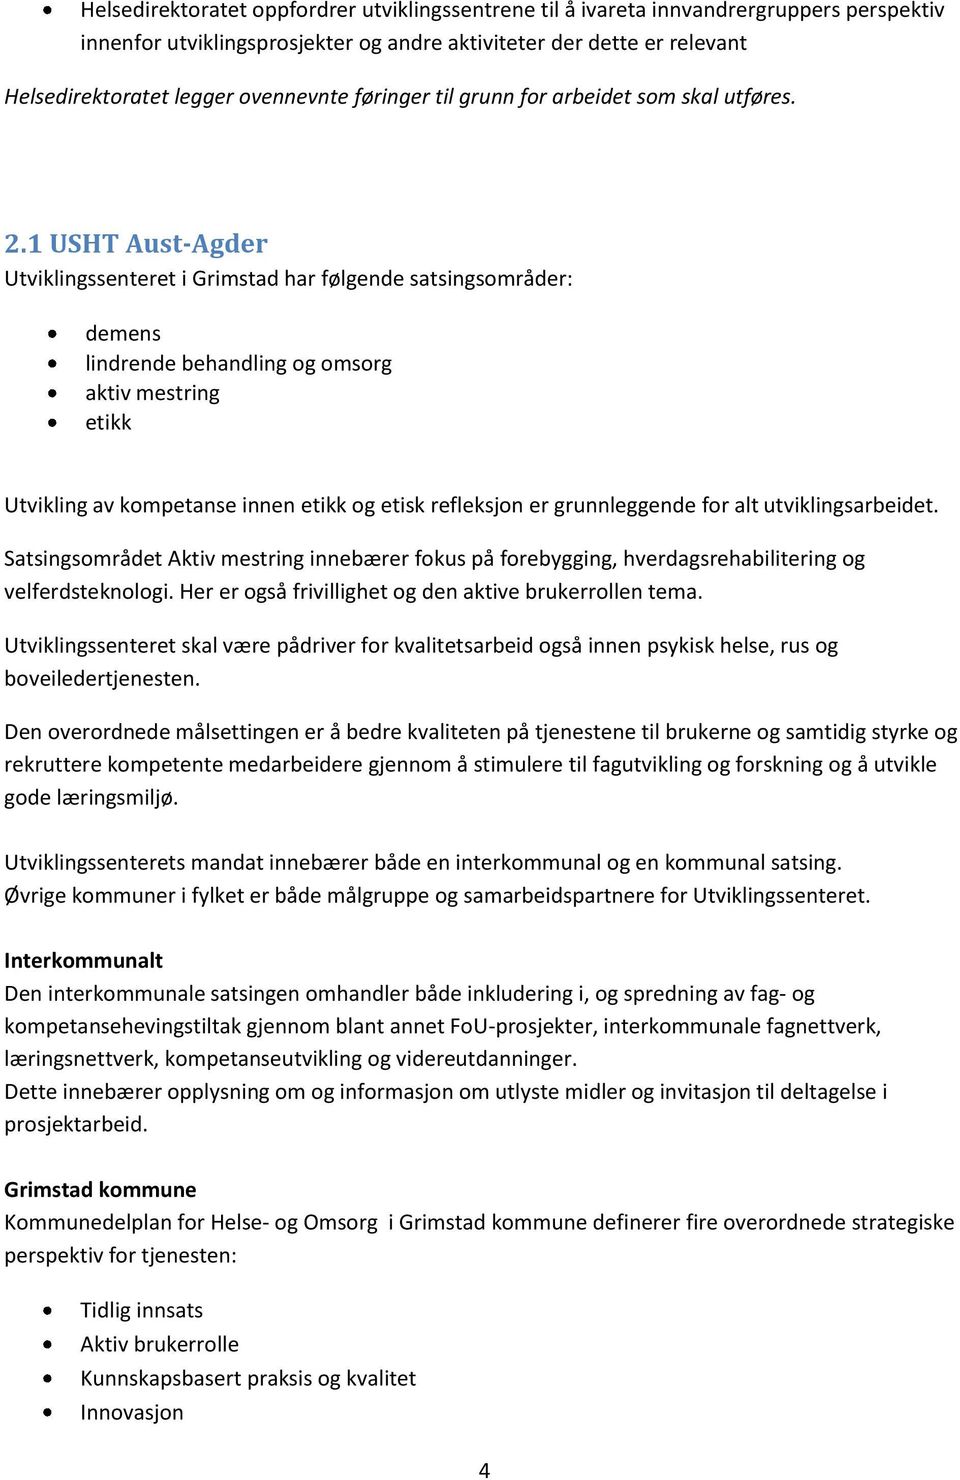 1 USHT Aust-Agder Utviklingssenteret i Grimstad har følgende satsingsområder: demens lindrende behandling og omsorg aktiv mestring etikk Utvikling av kompetanse innen etikk og etisk refleksjon er